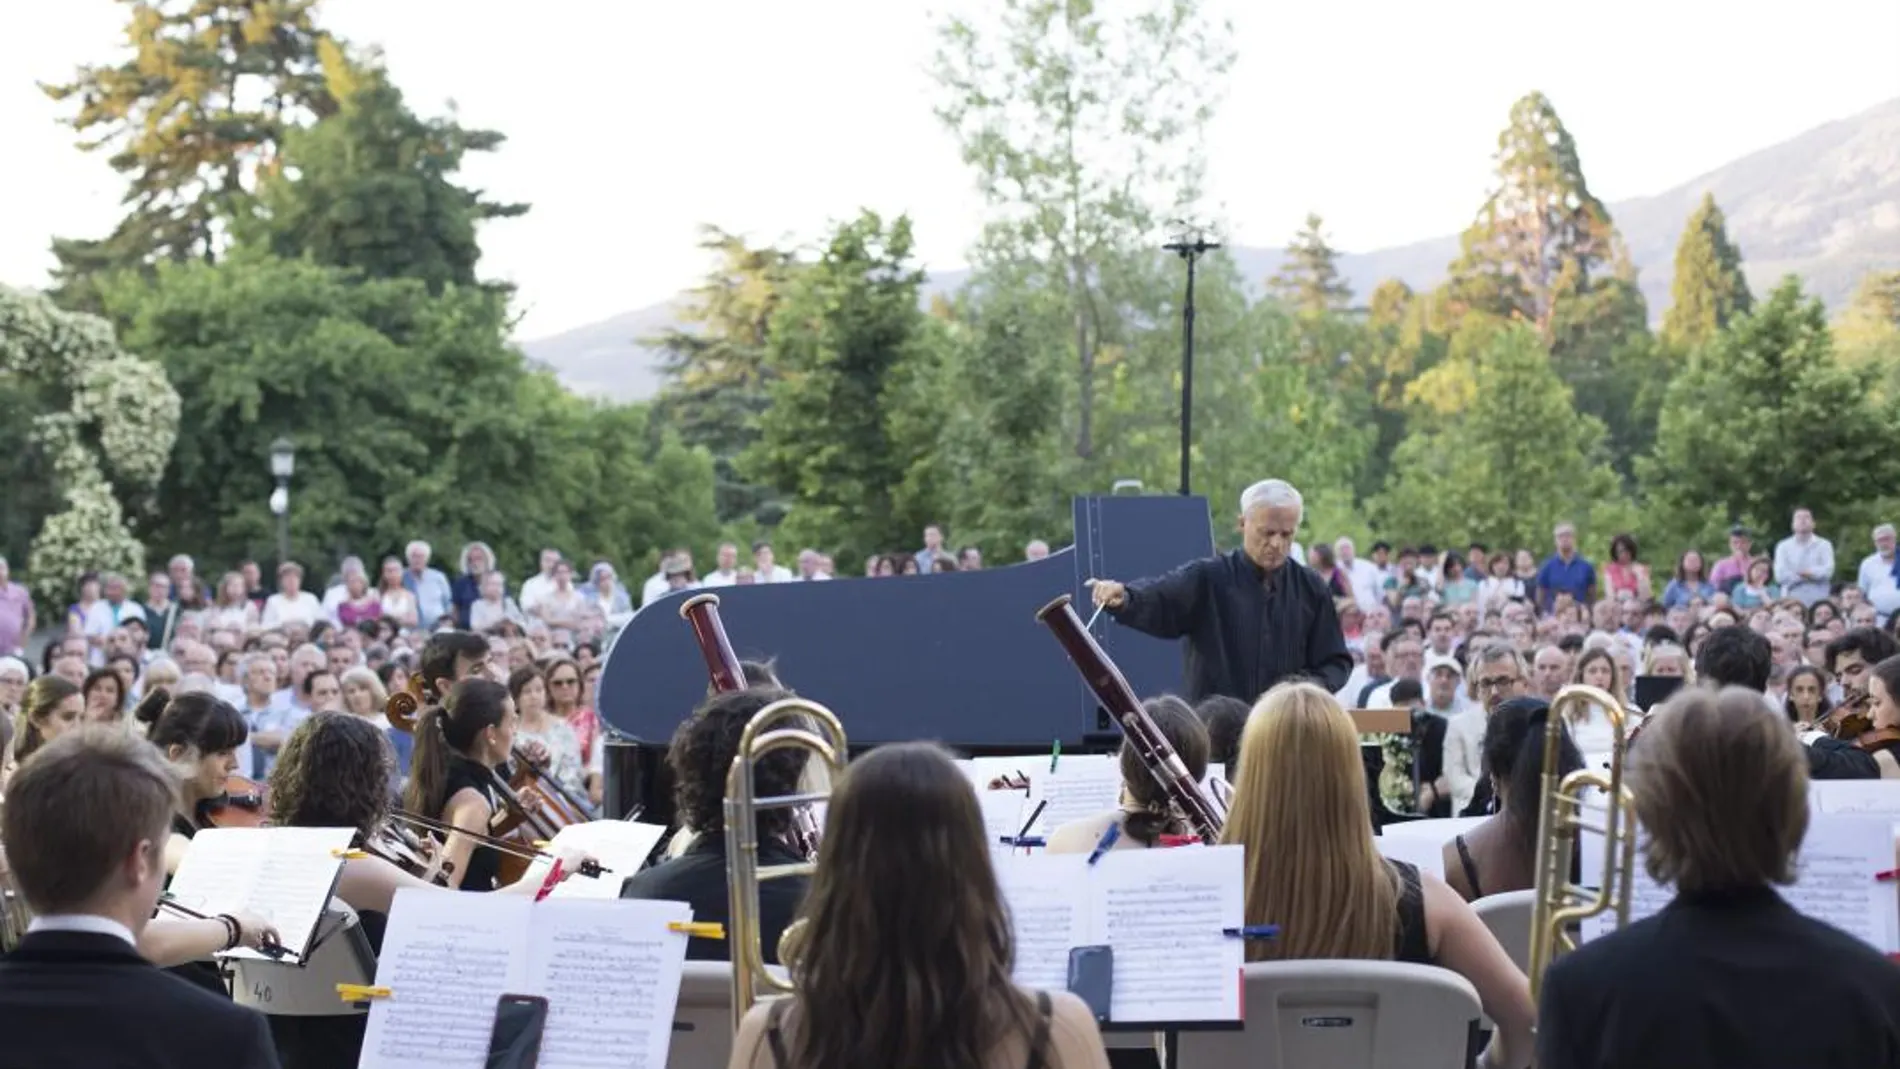 La Orquesta Sinfónica de La Granja abre sus Noches Mágicas